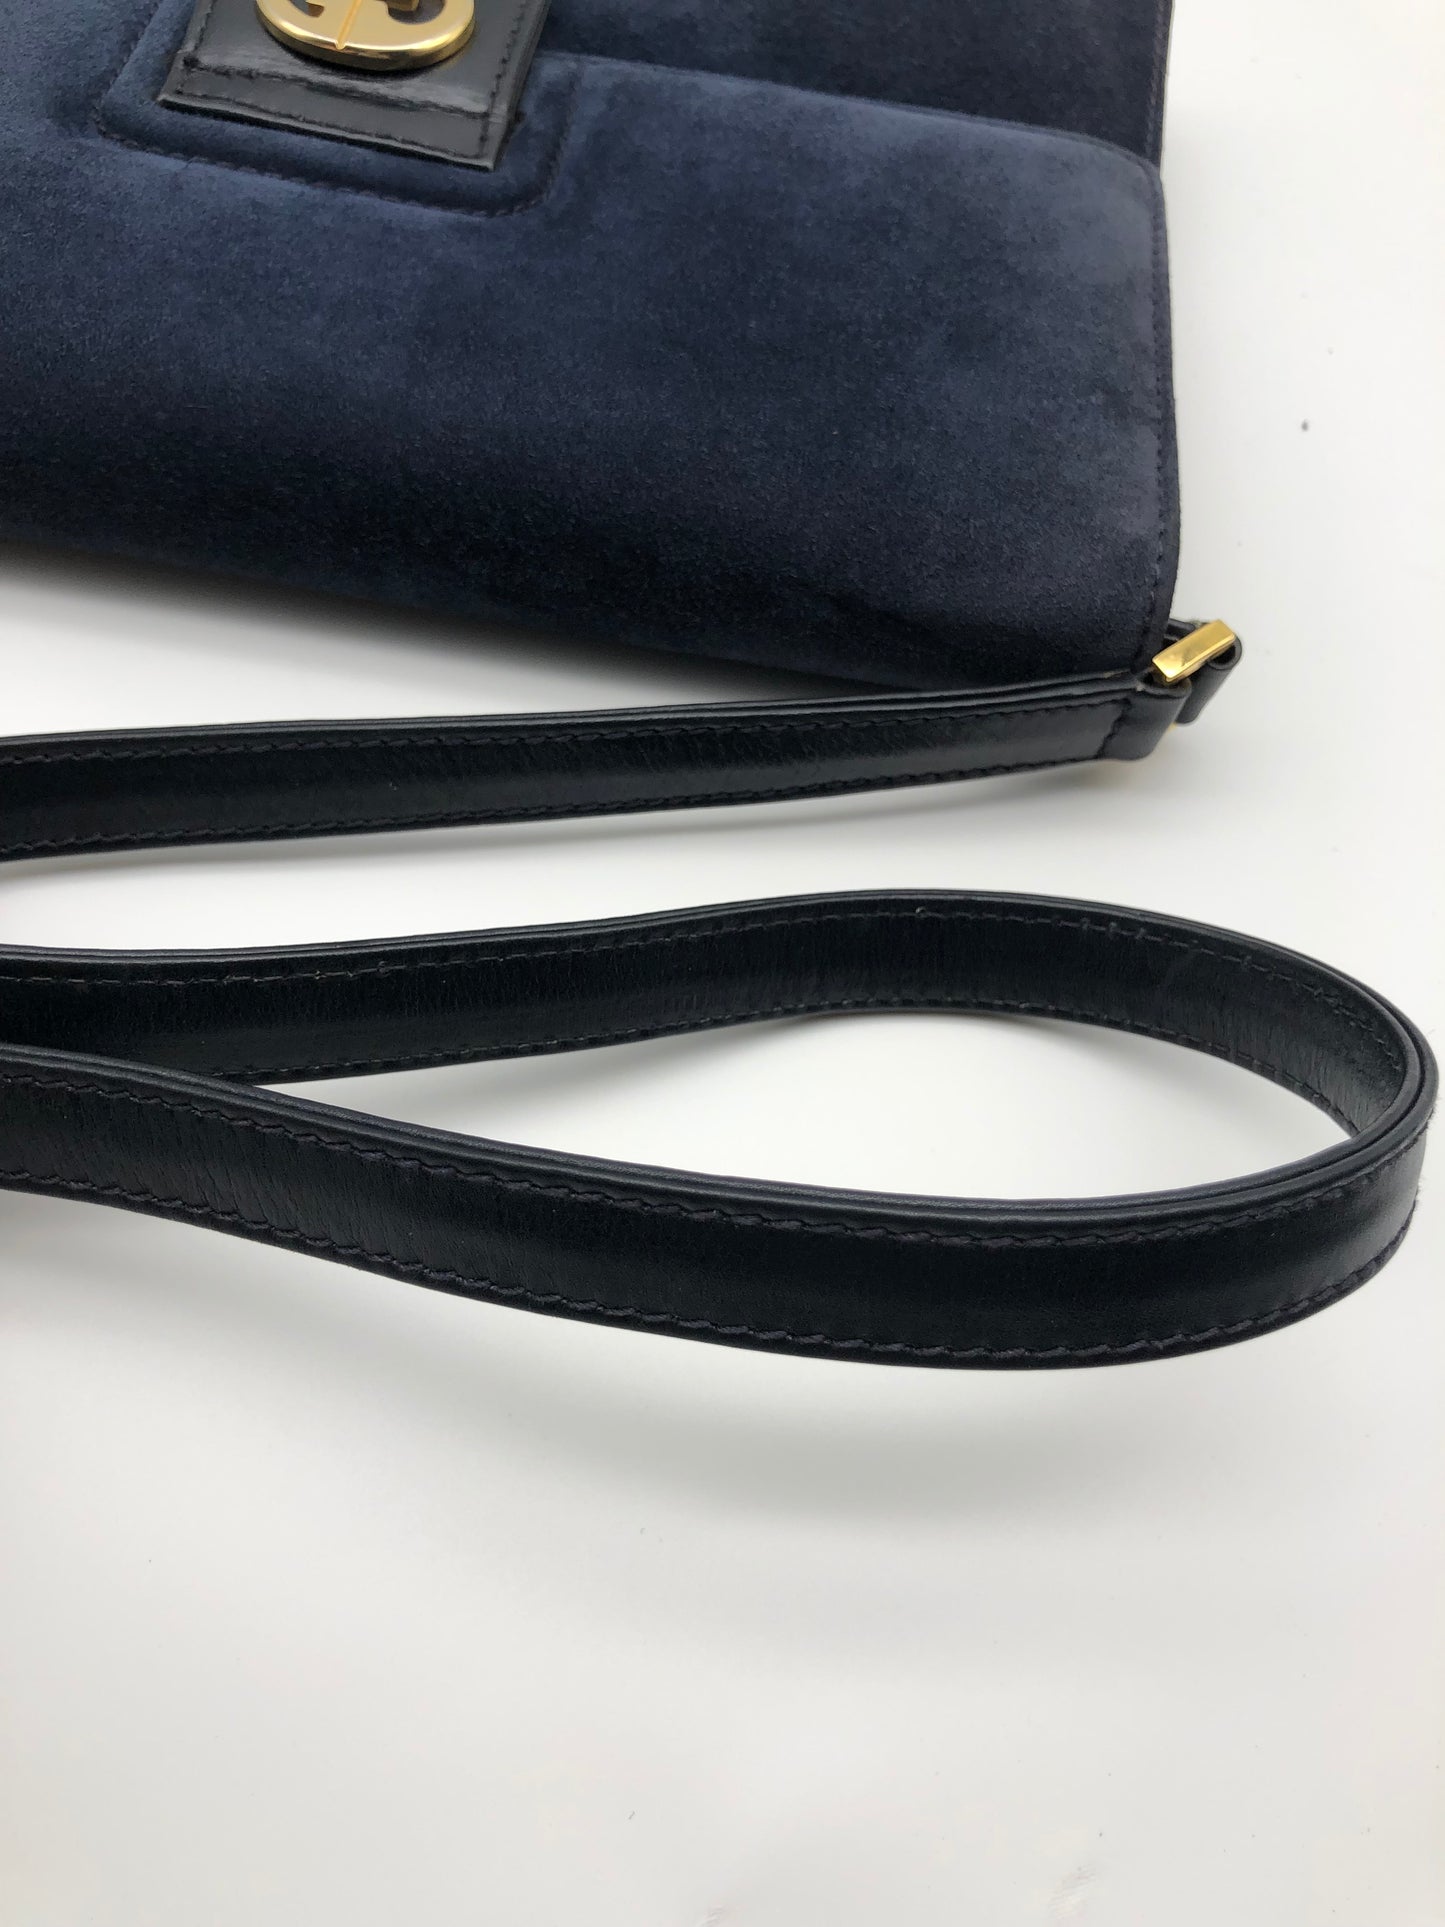 Authentic Gucci Vintage 1970s Navy Blue Suede Clutch Shoulder Bag